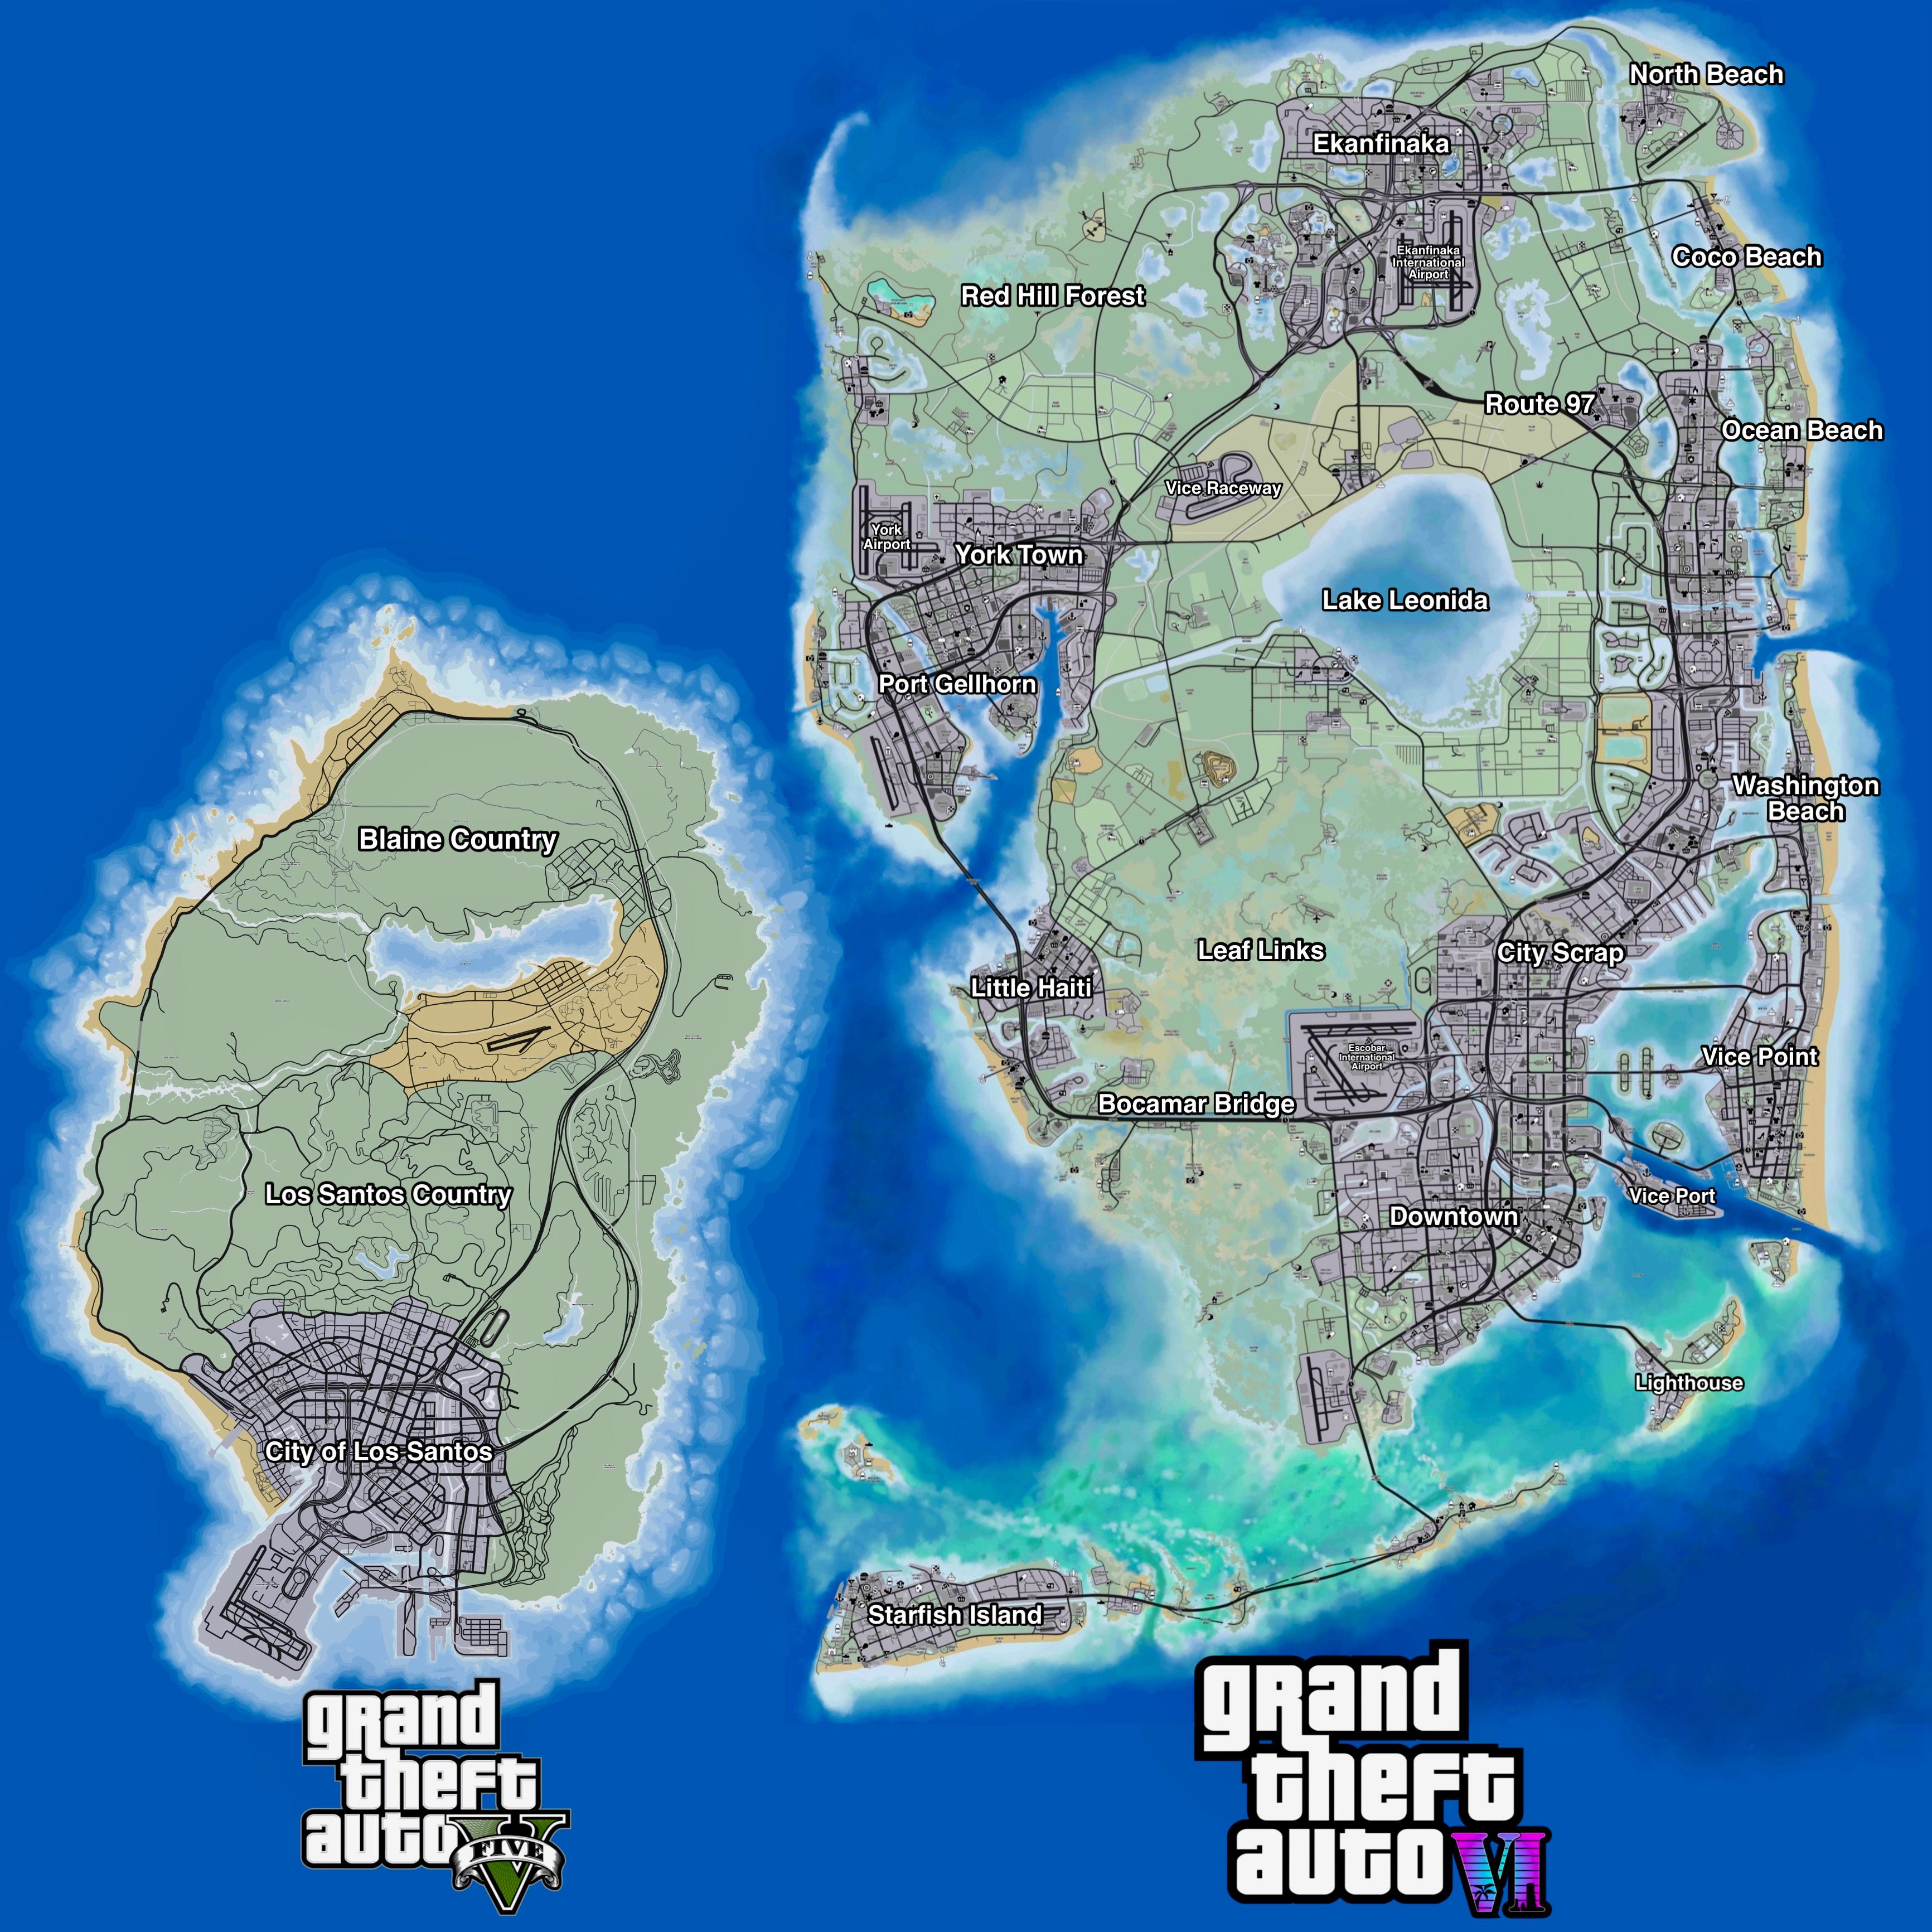 Карта GTA V и предполагаемая карта GTA VI с названиями областей